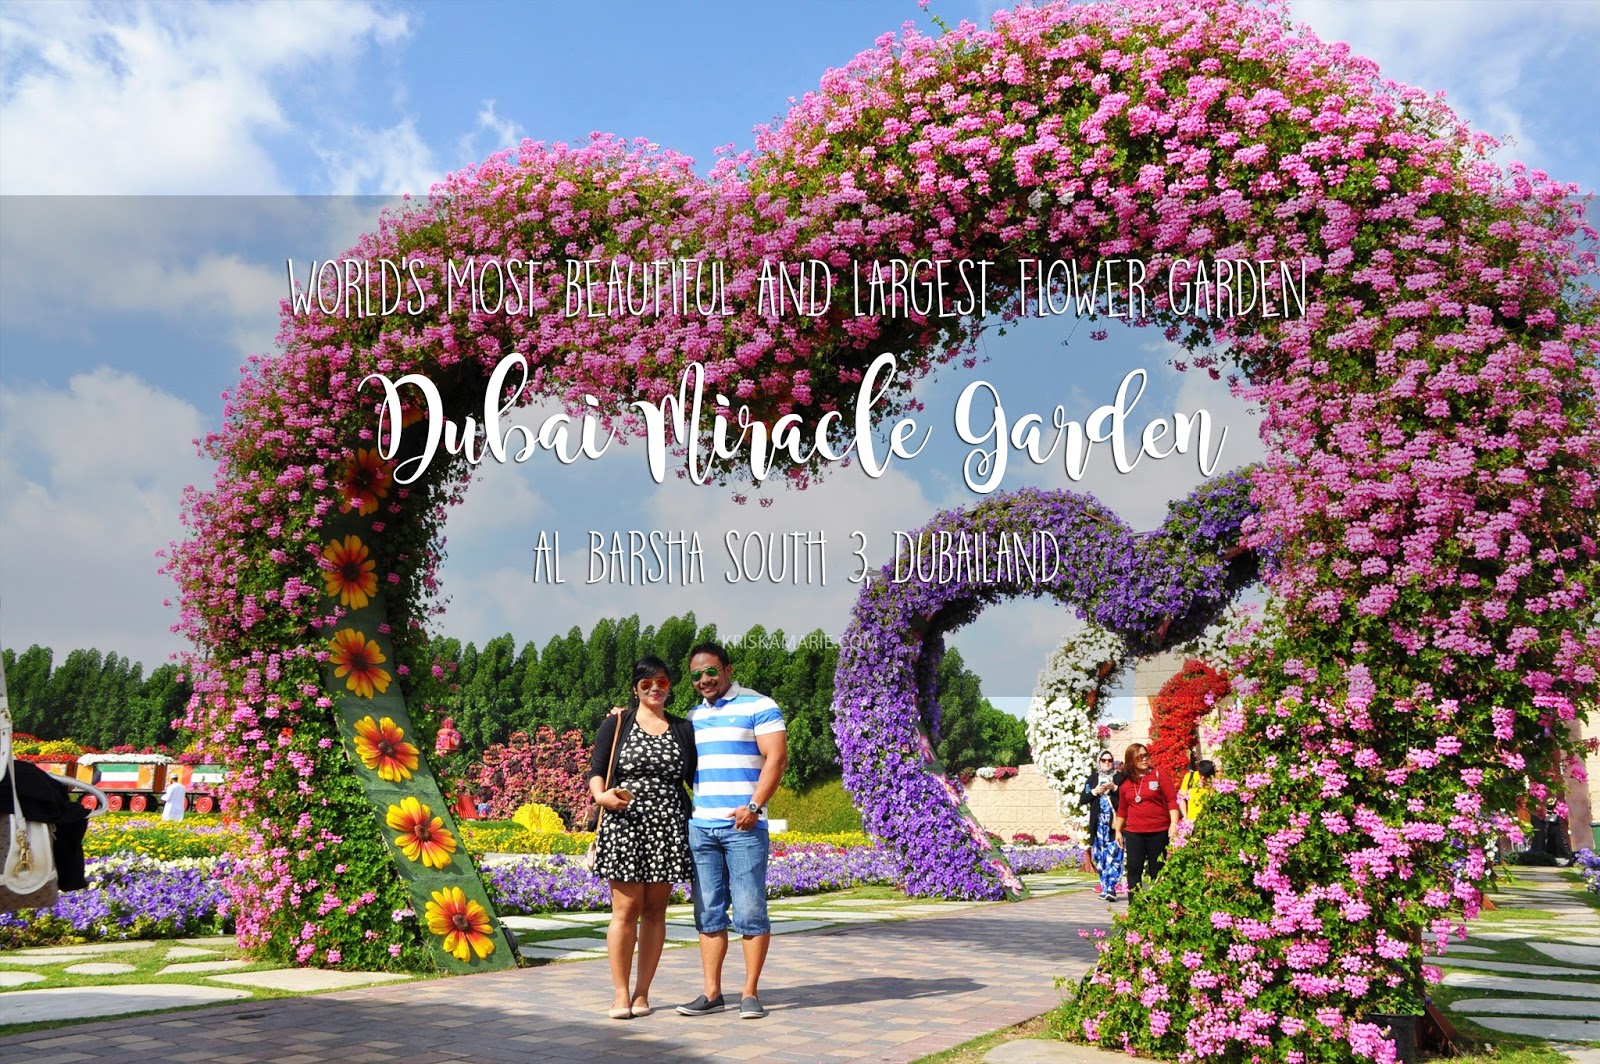 Dubai Miracle Garden 2016 A Desert Oasis Of 45 Million Flowers World Travel Adventurers Miracle Garden Million Flowers Flowers